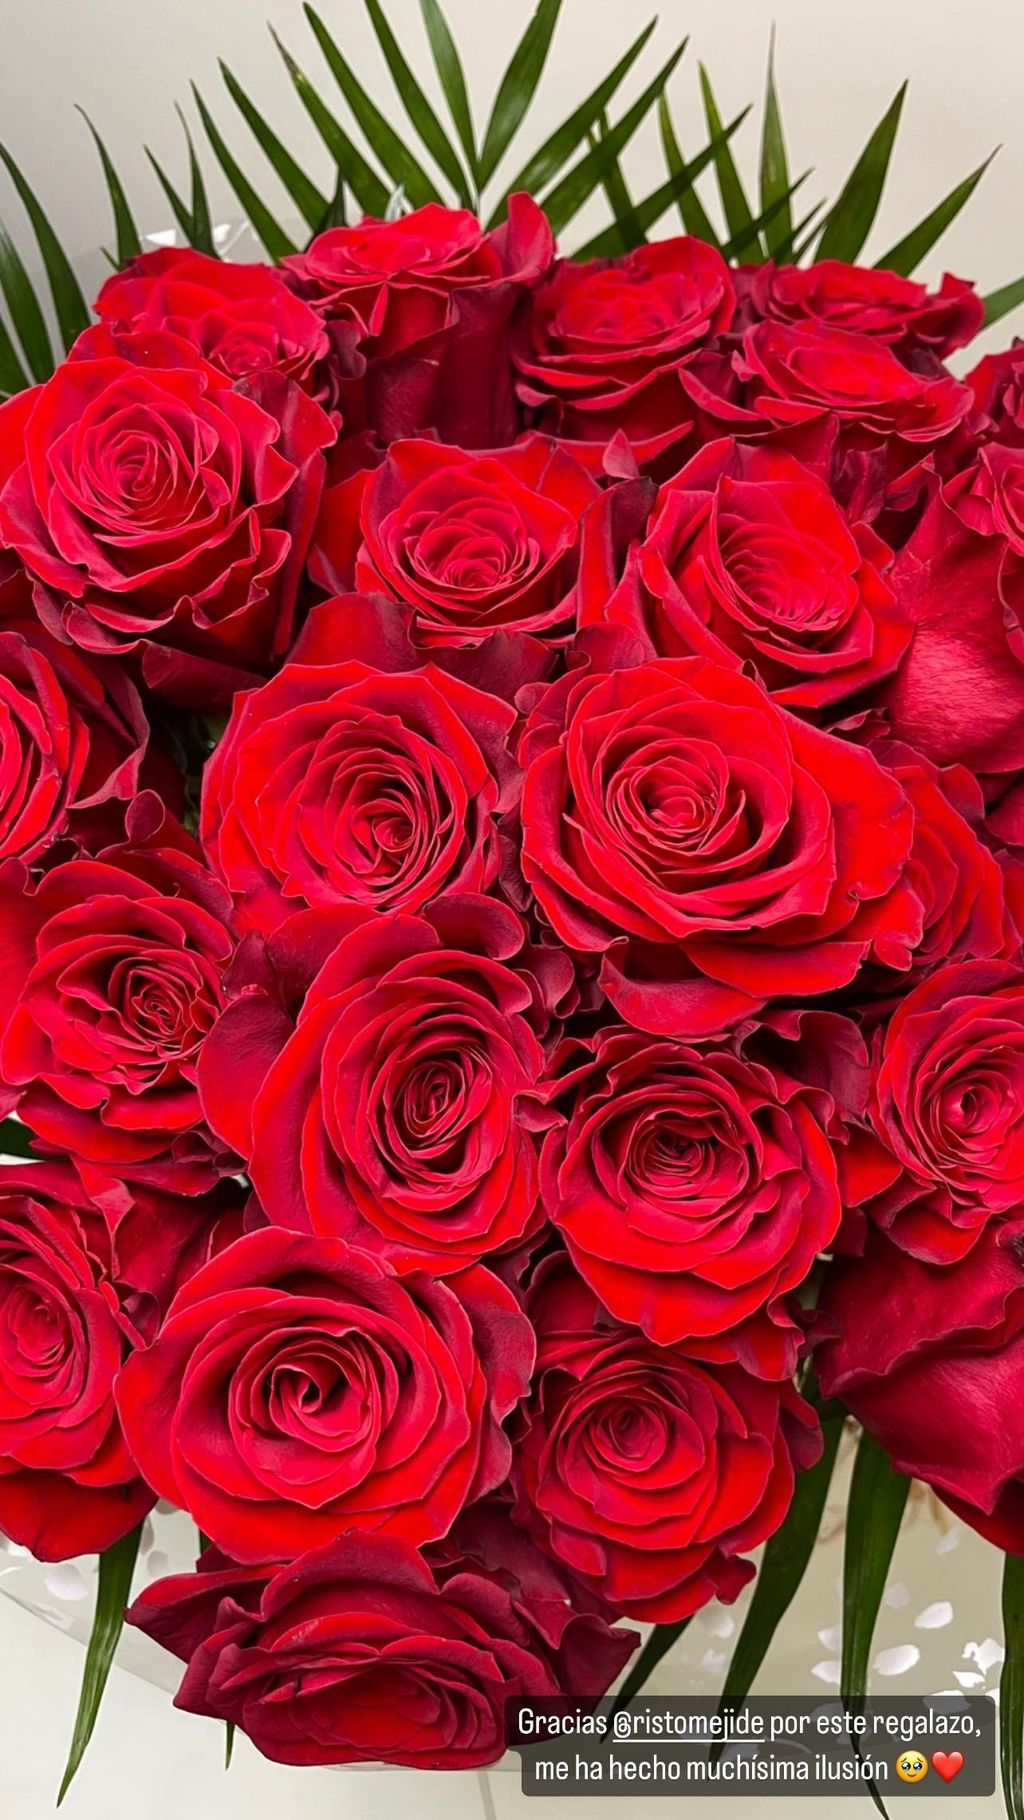 Risto regala un ramo de rosas rojas a Natalia Almarcha por su cumpleaños